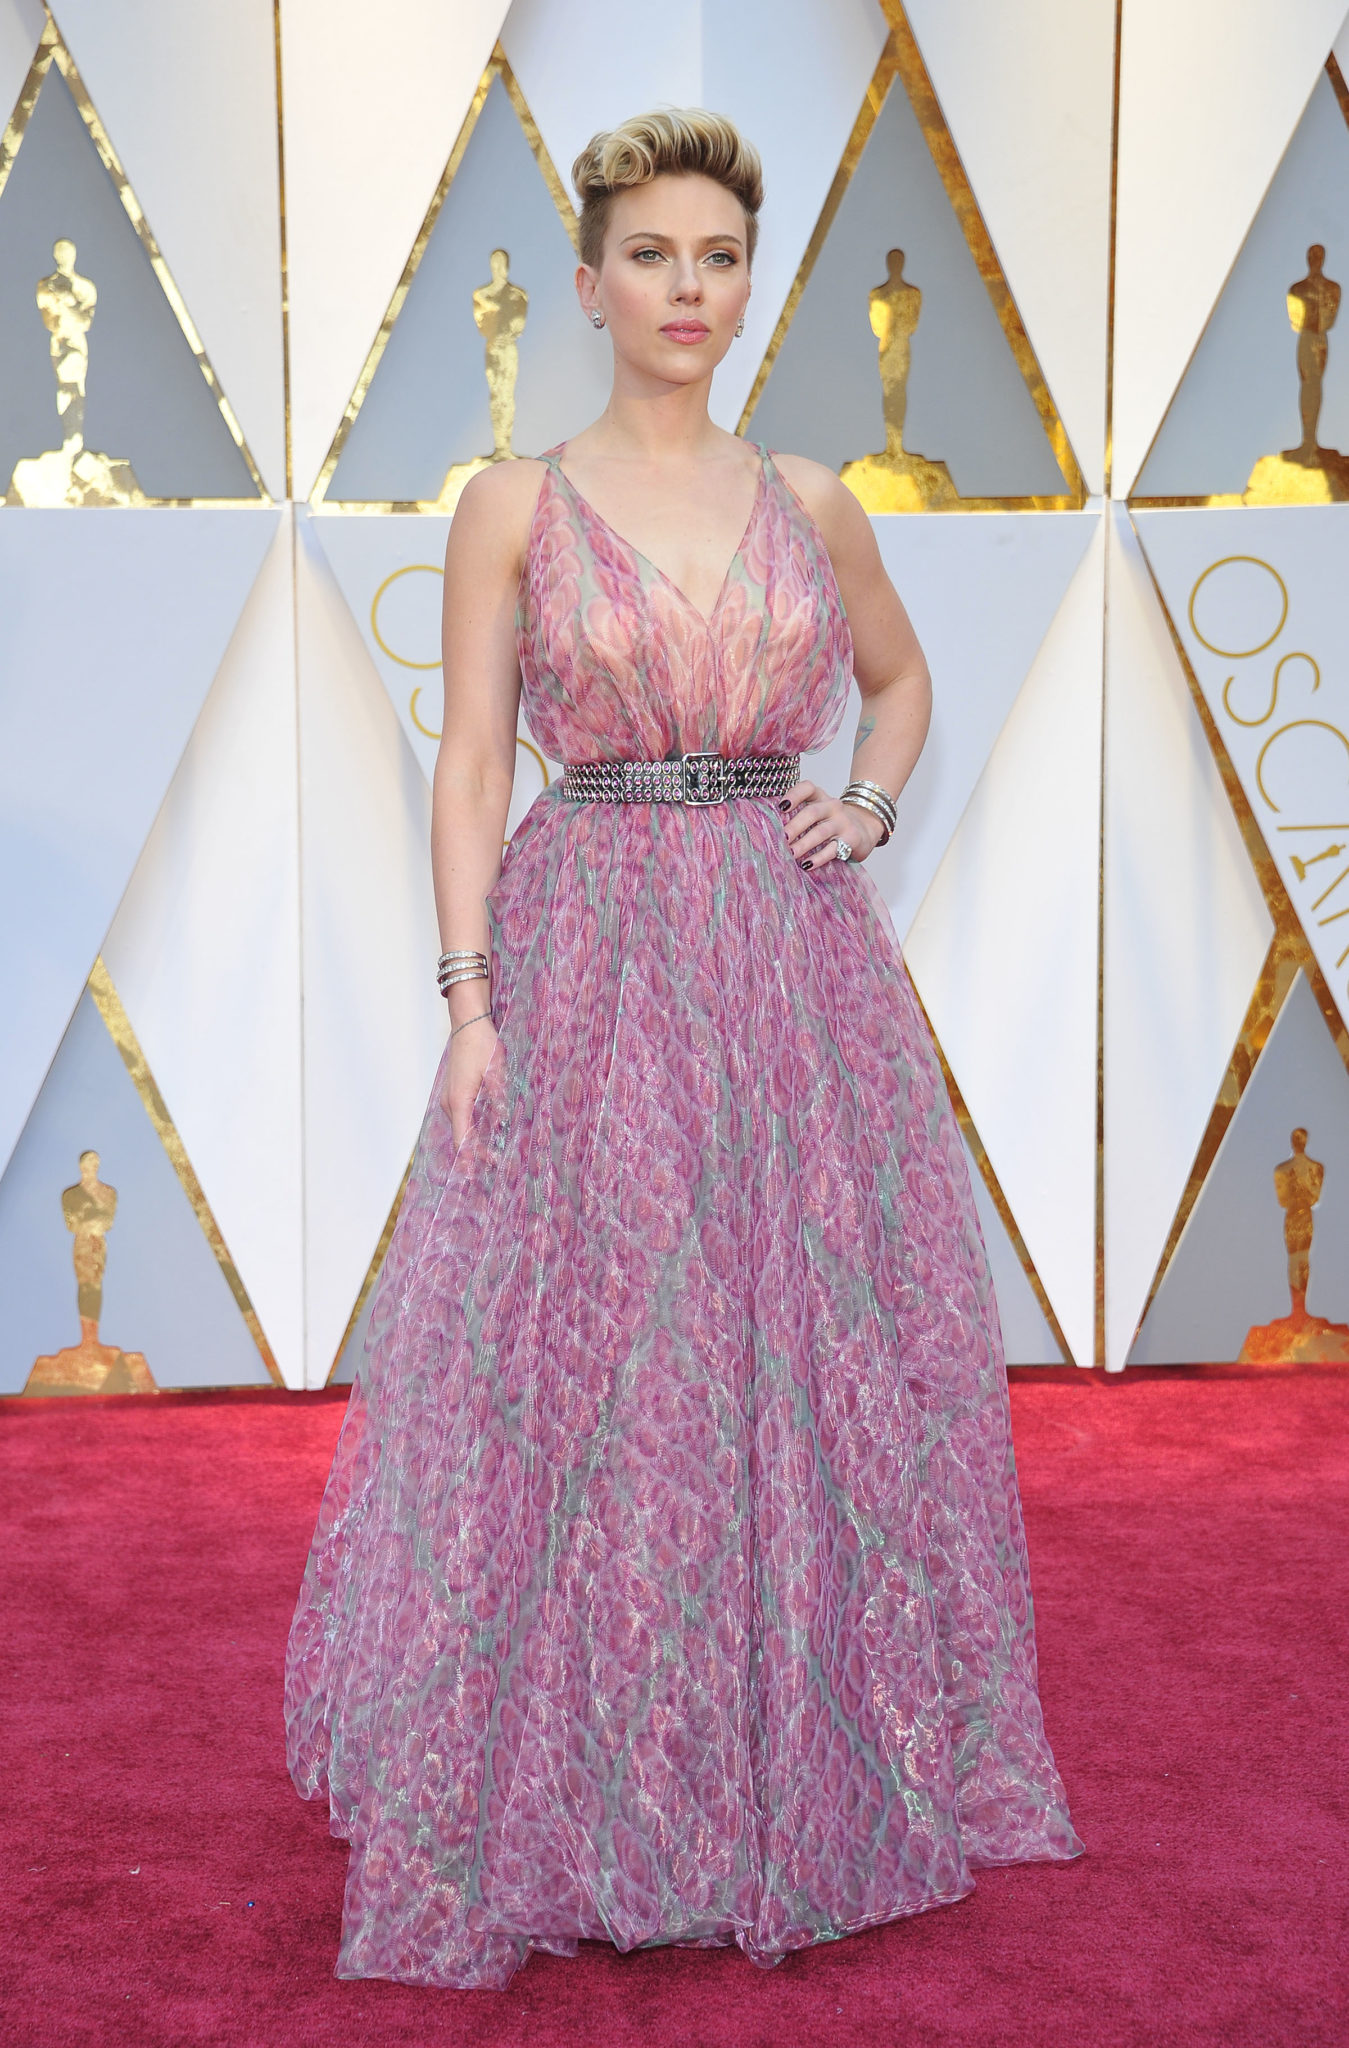 Scarlett Johansson, cat se poate de serioasa intr- tinuta multi-colora